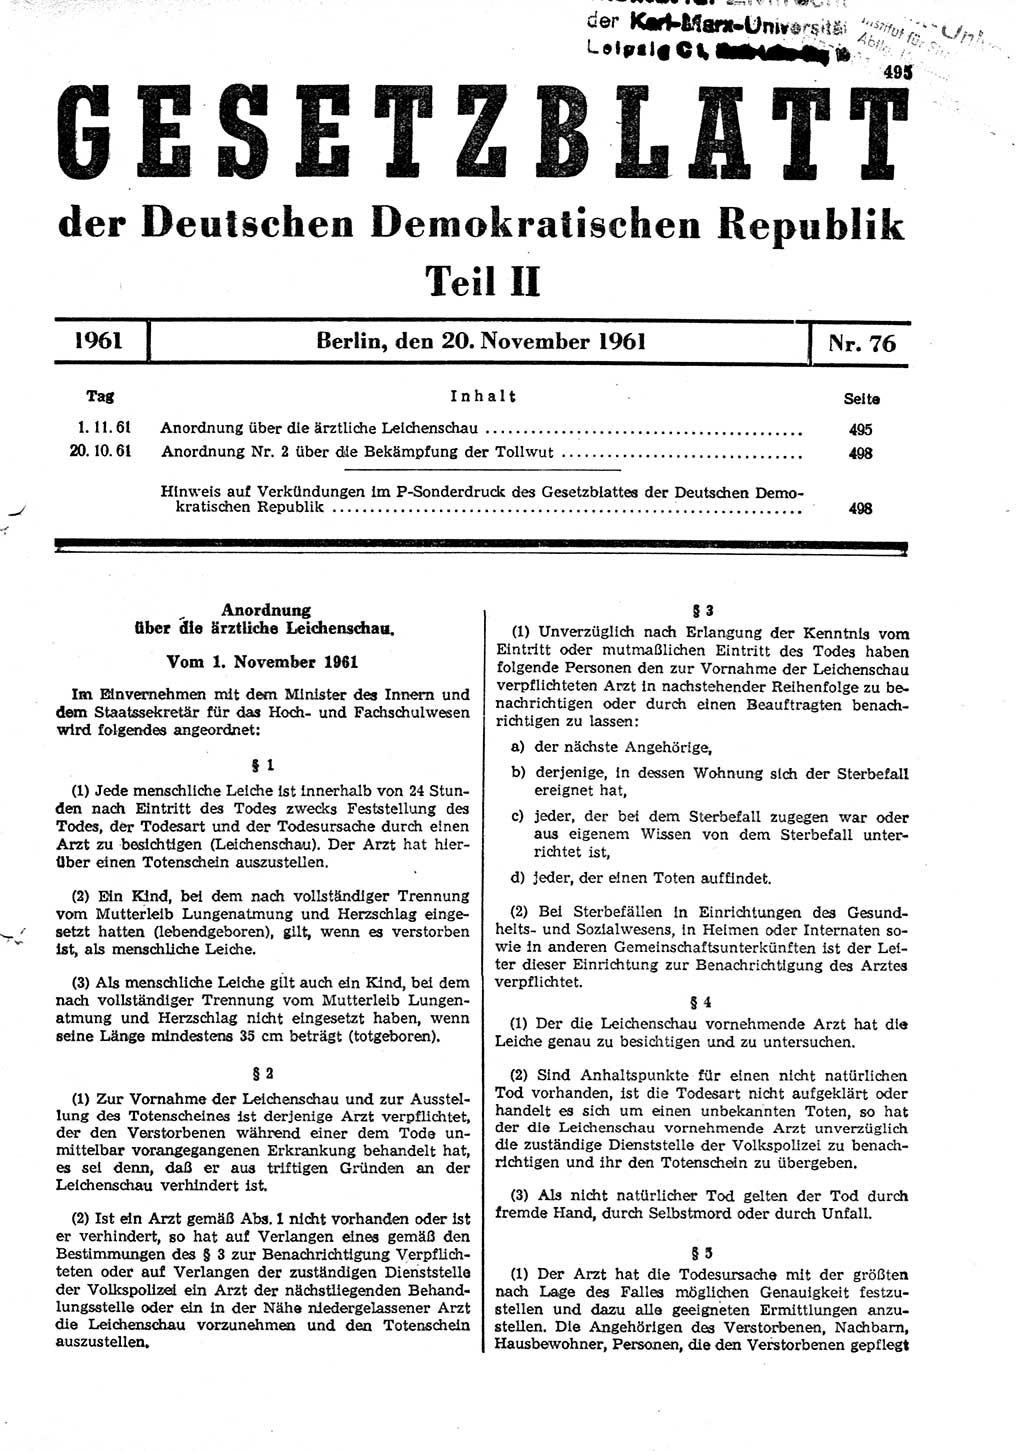 Gesetzblatt (GBl.) der Deutschen Demokratischen Republik (DDR) Teil ⅠⅠ 1961, Seite 495 (GBl. DDR ⅠⅠ 1961, S. 495)